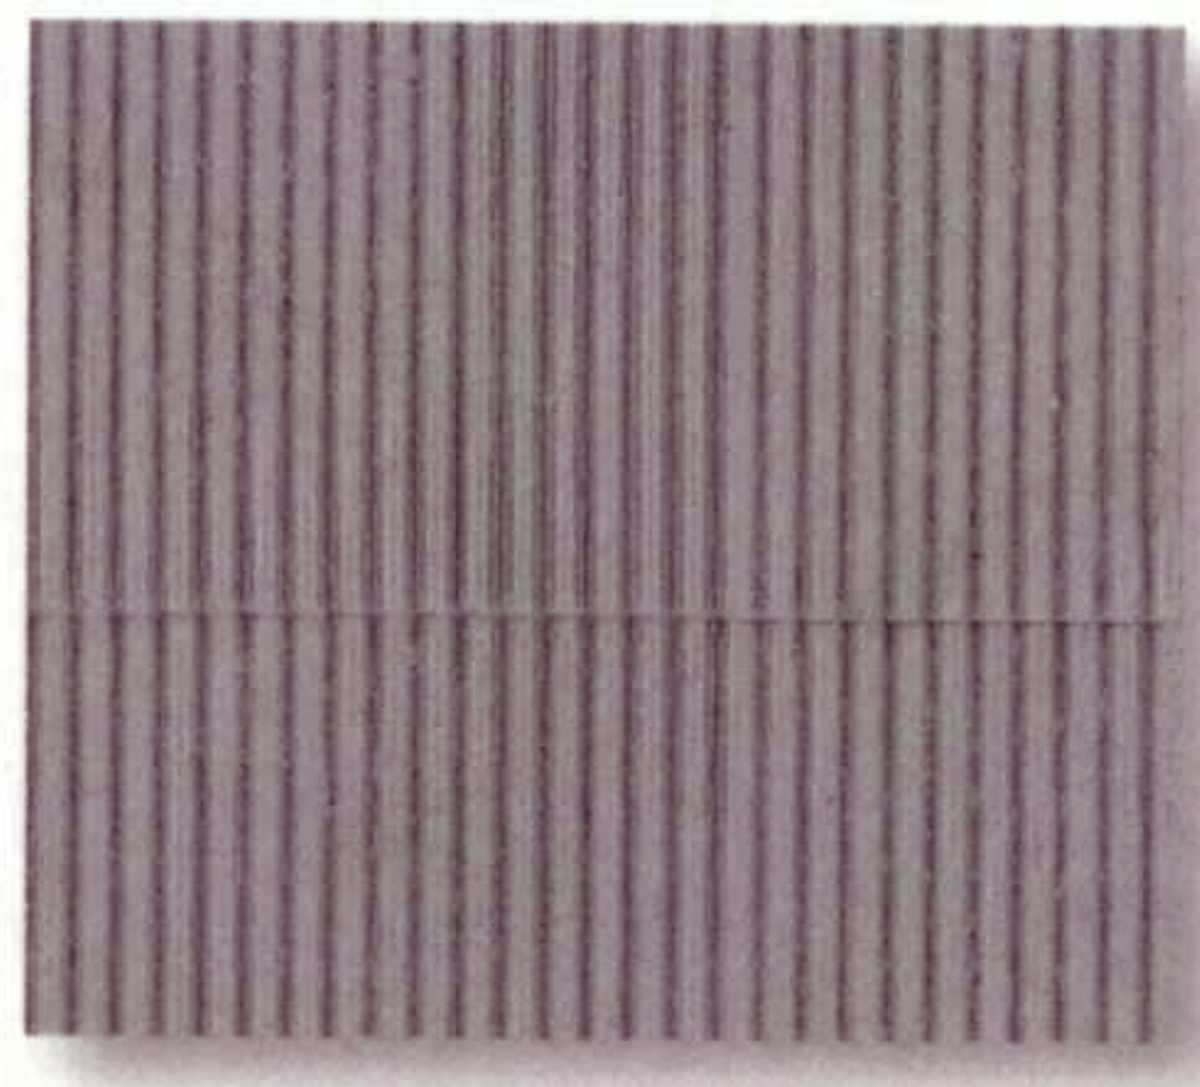 Kibri 34143 - Welleneternitplatte mit Firstabdeckung, 20x12 cm